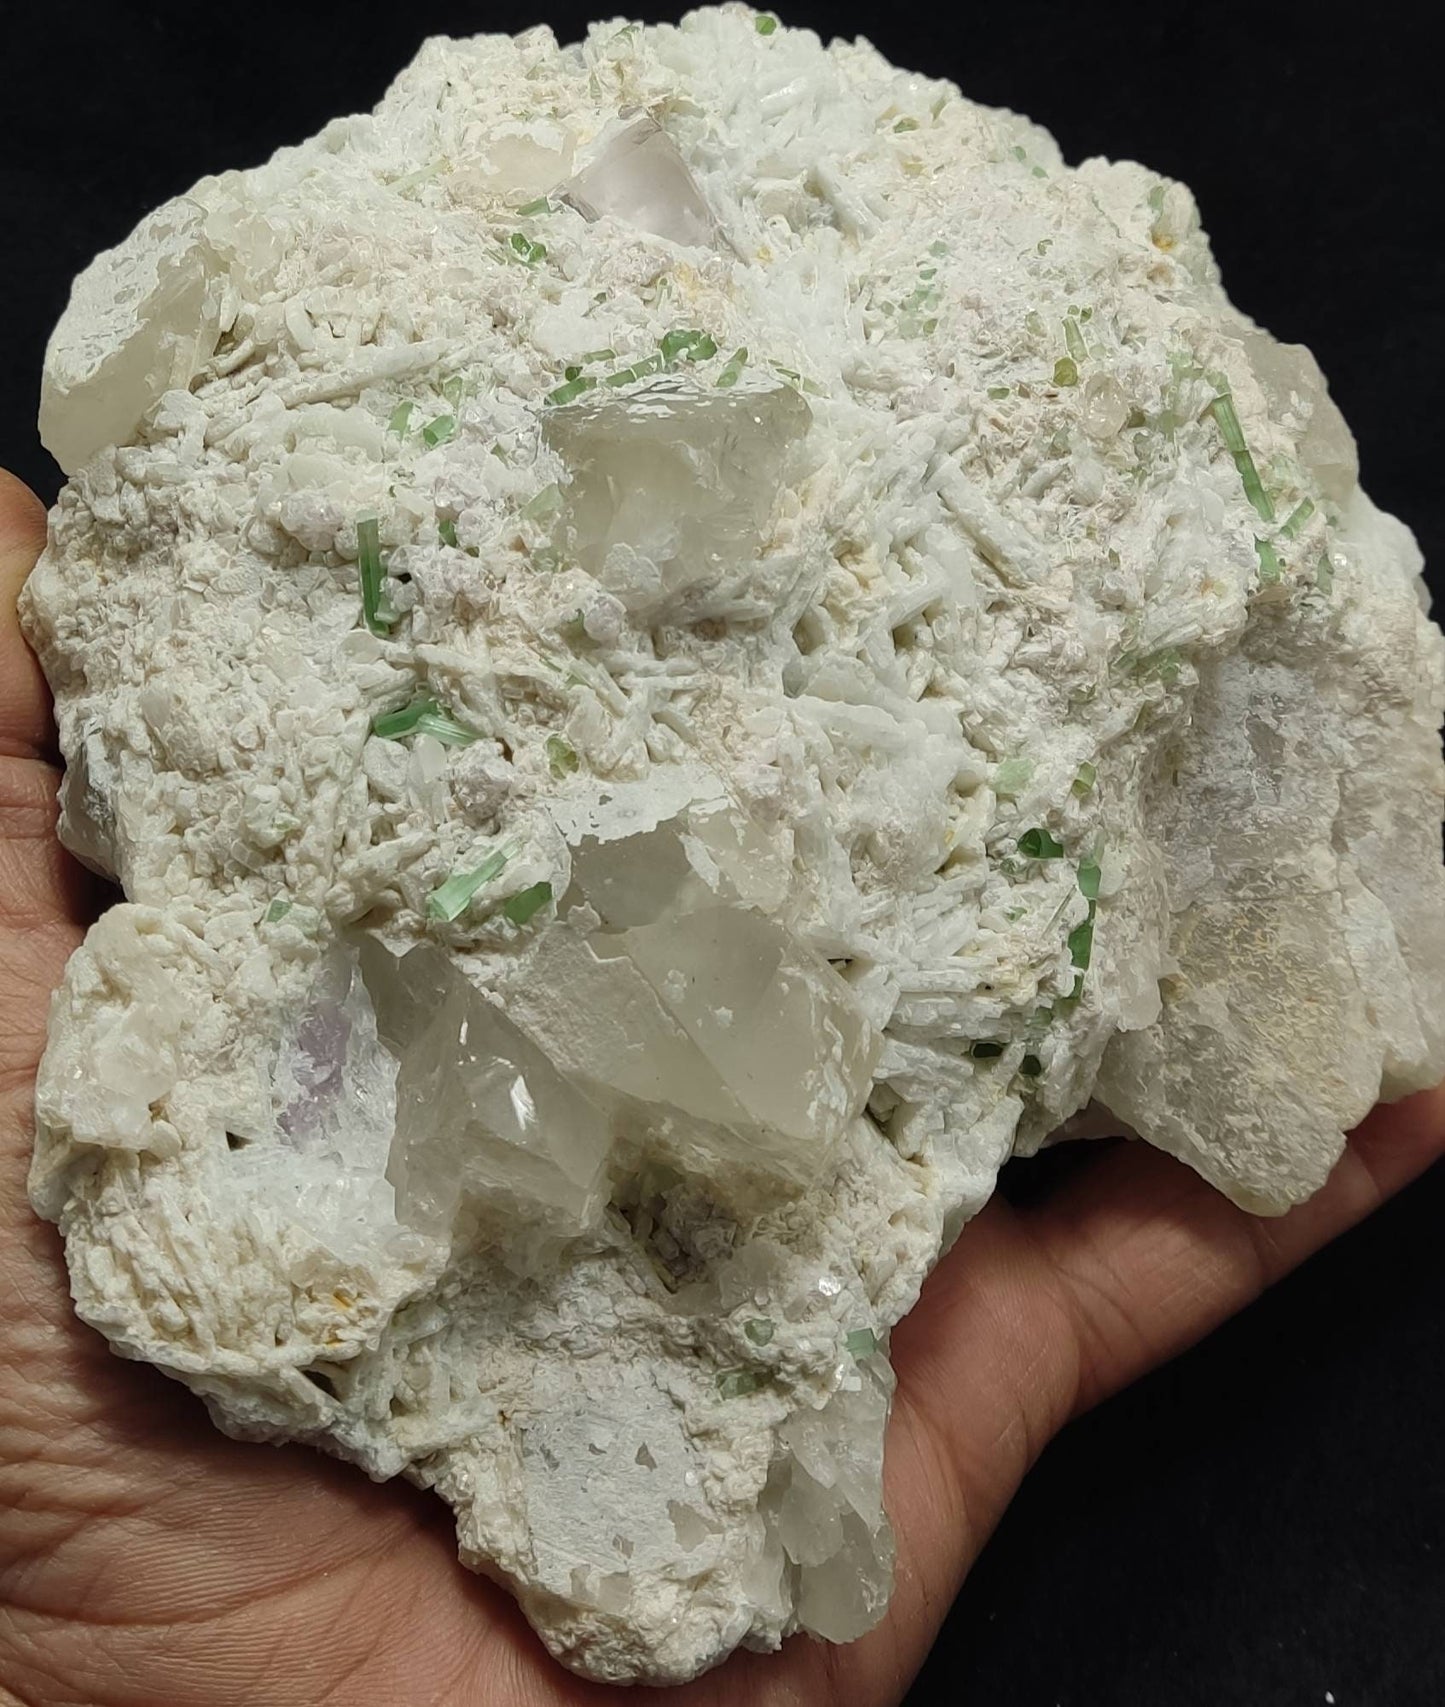 Combo specimen of morganite tourmaline quartz and cleavlandite 2120 grams